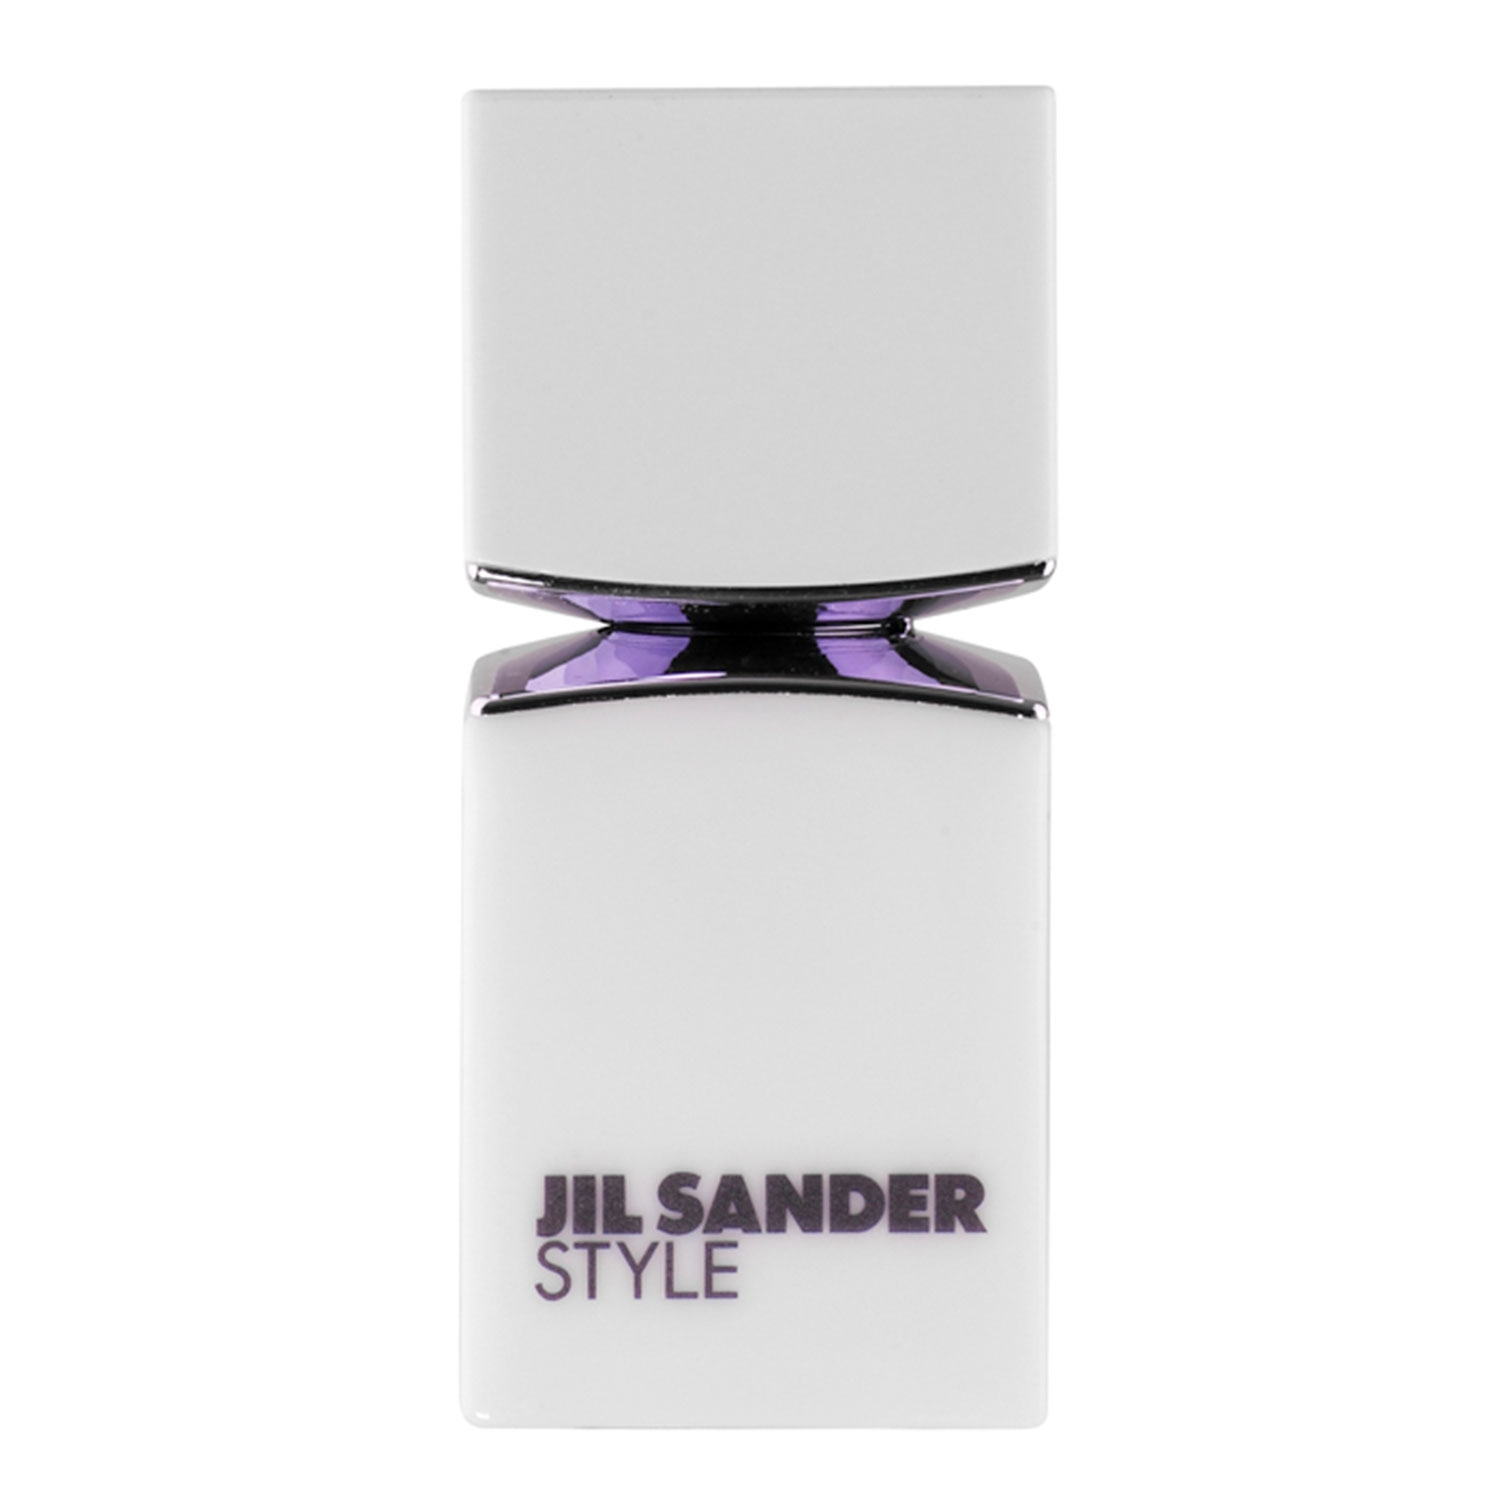 Produktbild von Jil Sander Style - Eau de Parfum